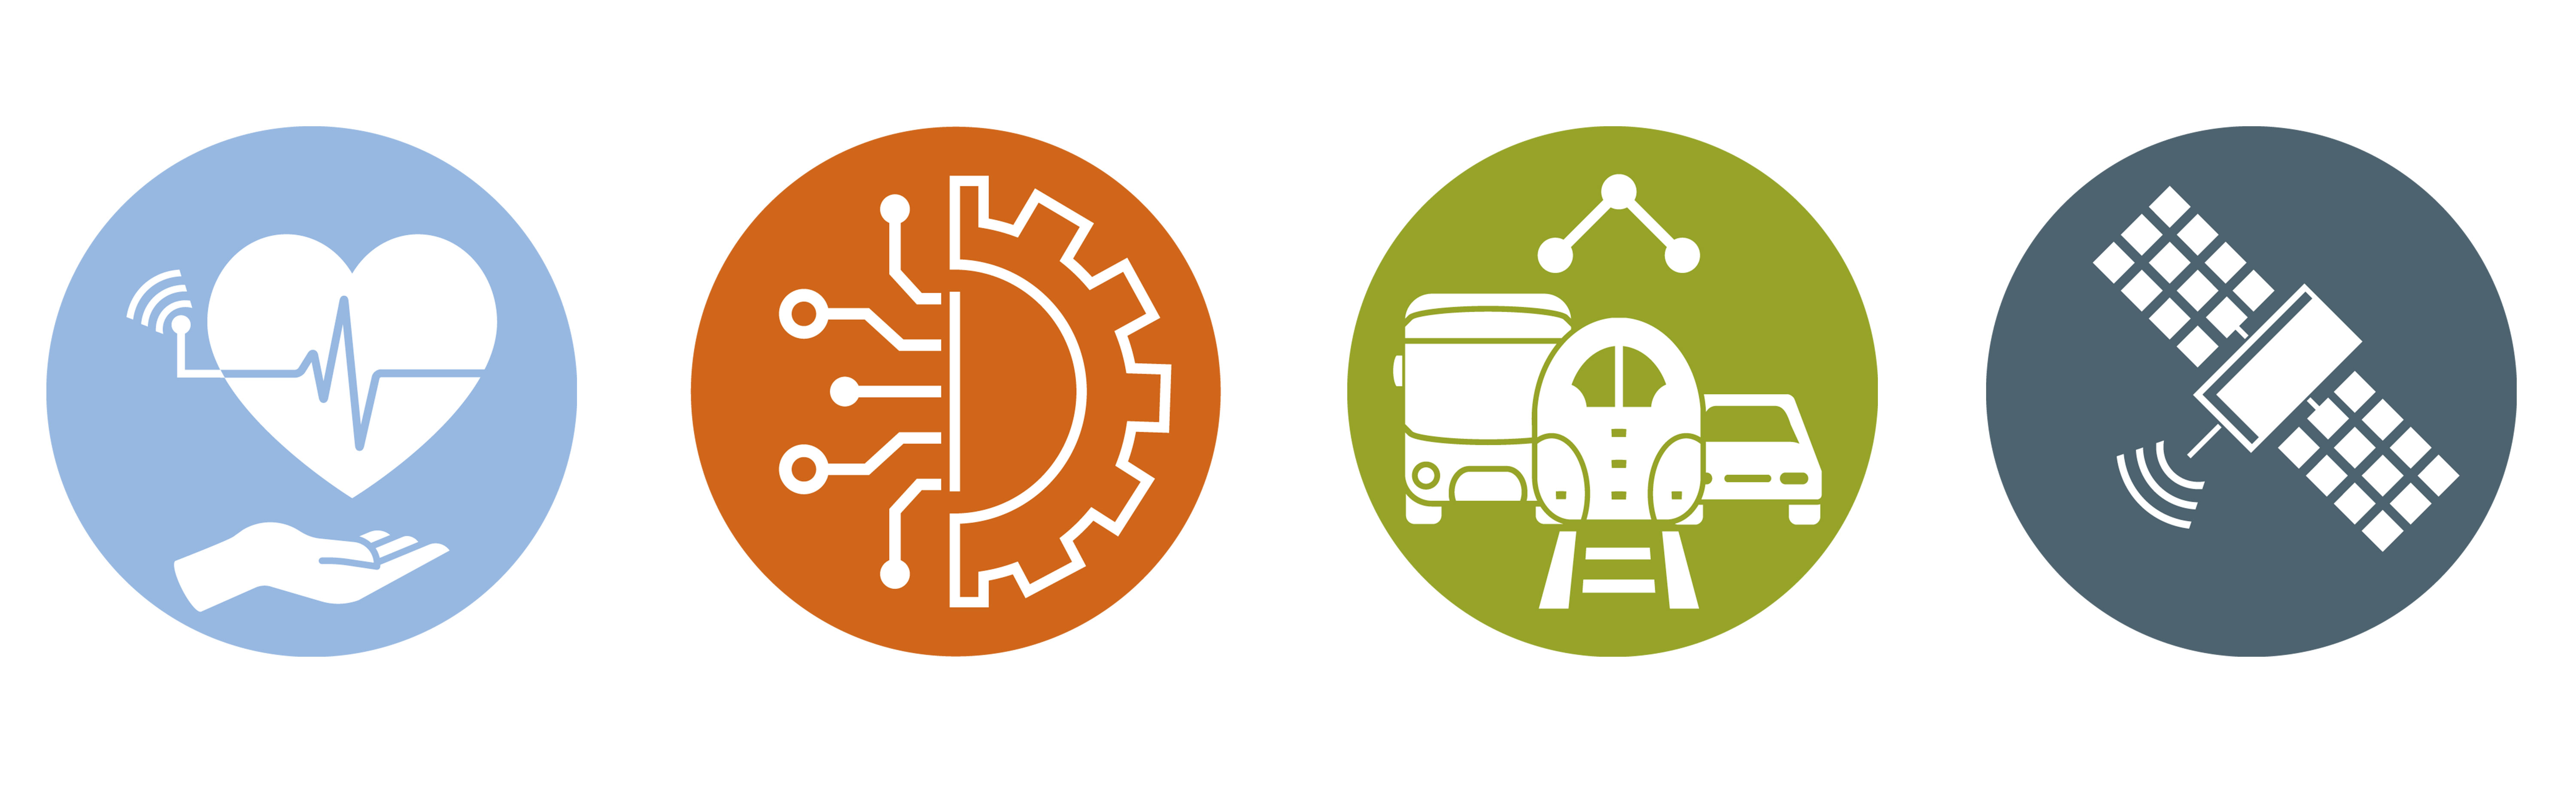 Die 4 Logos der Geschäftsfelder